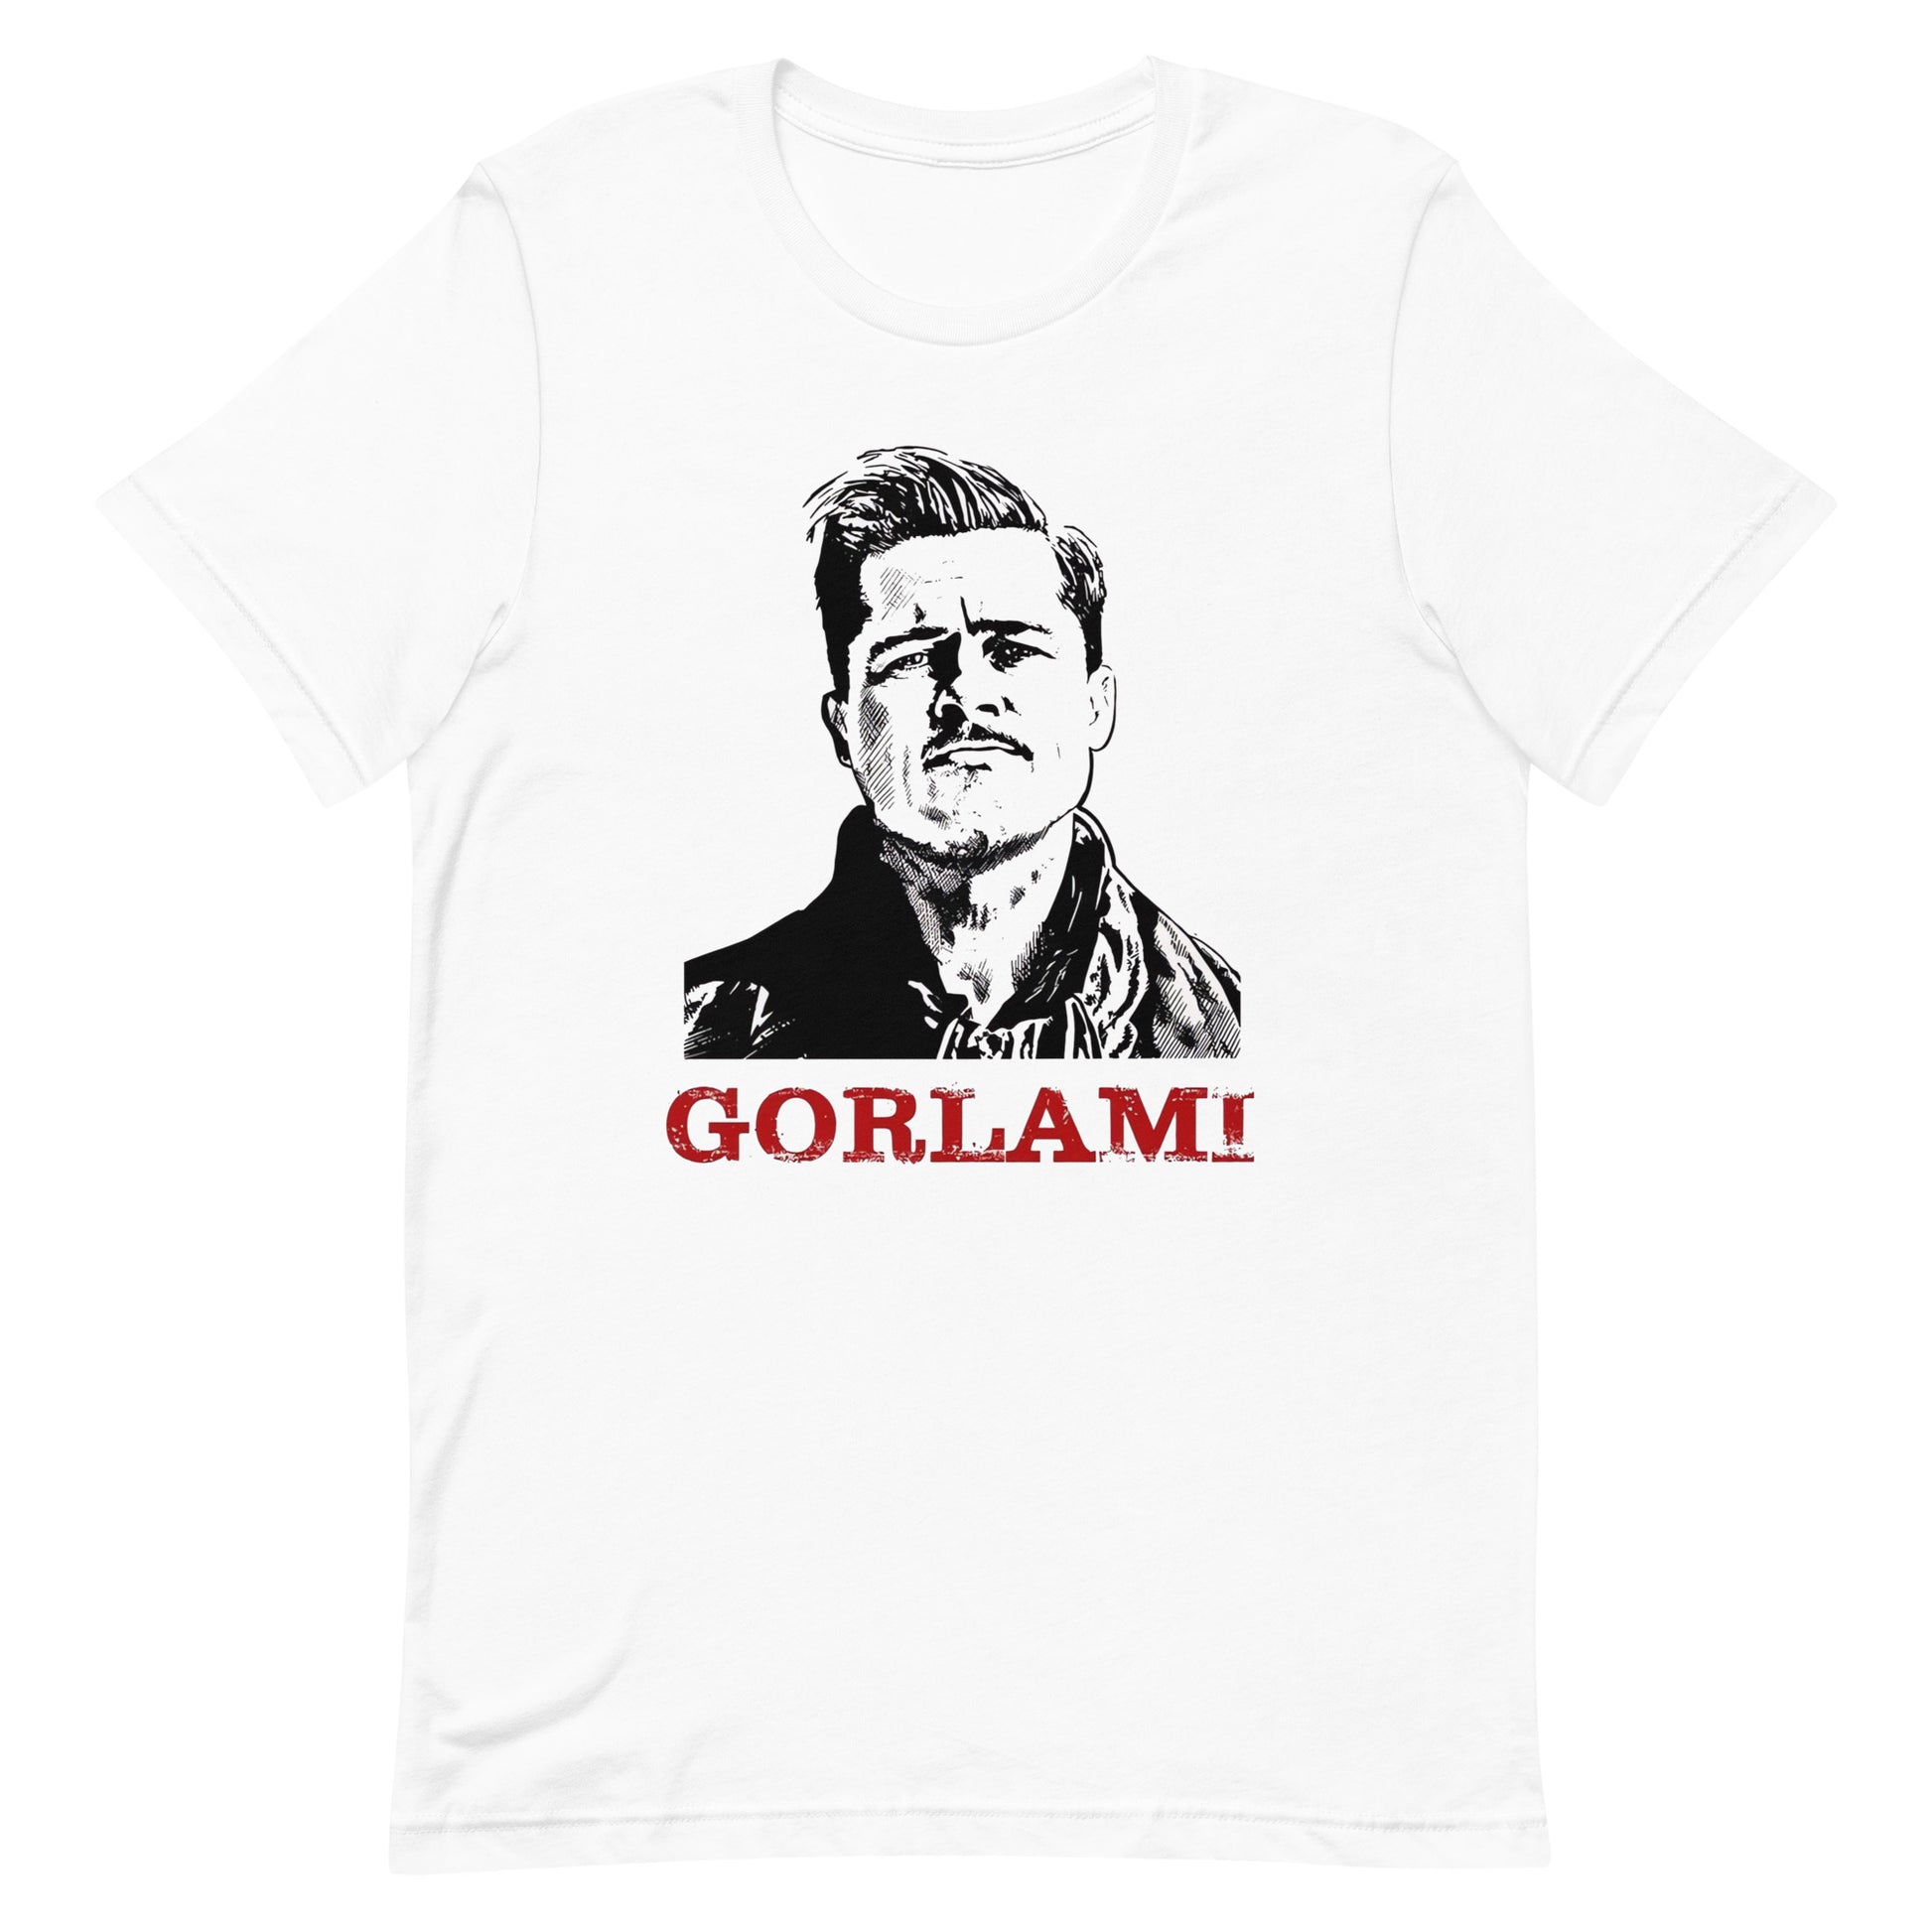 Camiseta Gorlami, nuestras opciones de playeras son Unisex. disponible en Superstar. Compra y envíos internacionales.